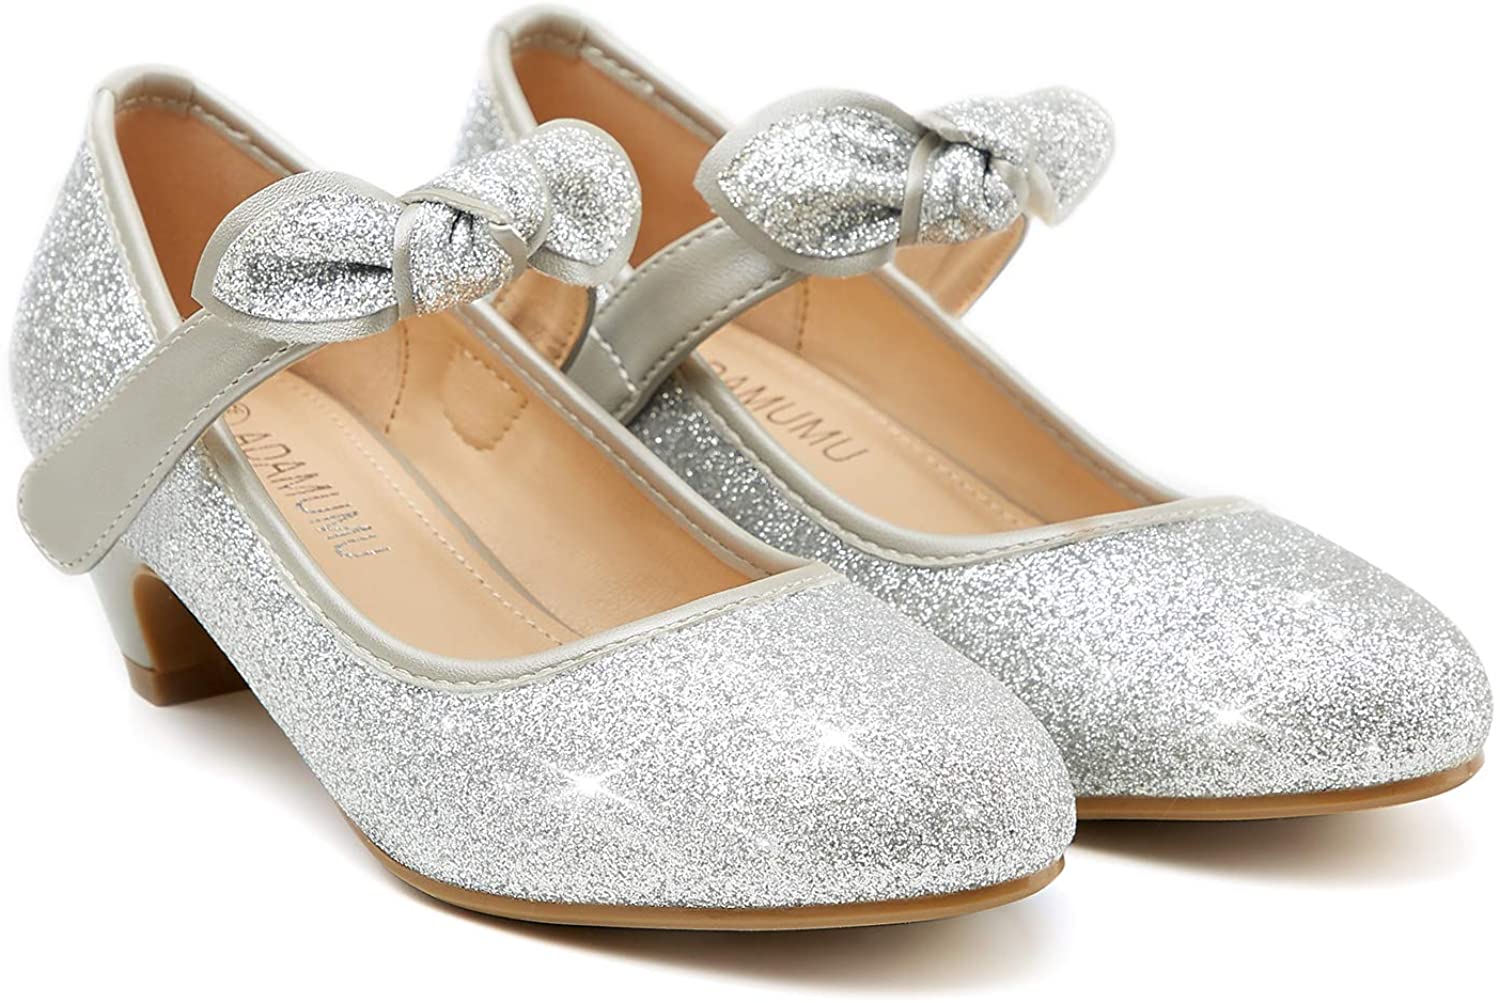 ADAMUMU Low Heels for Little Girls Party Wear Shoes, Glitter Silver ...